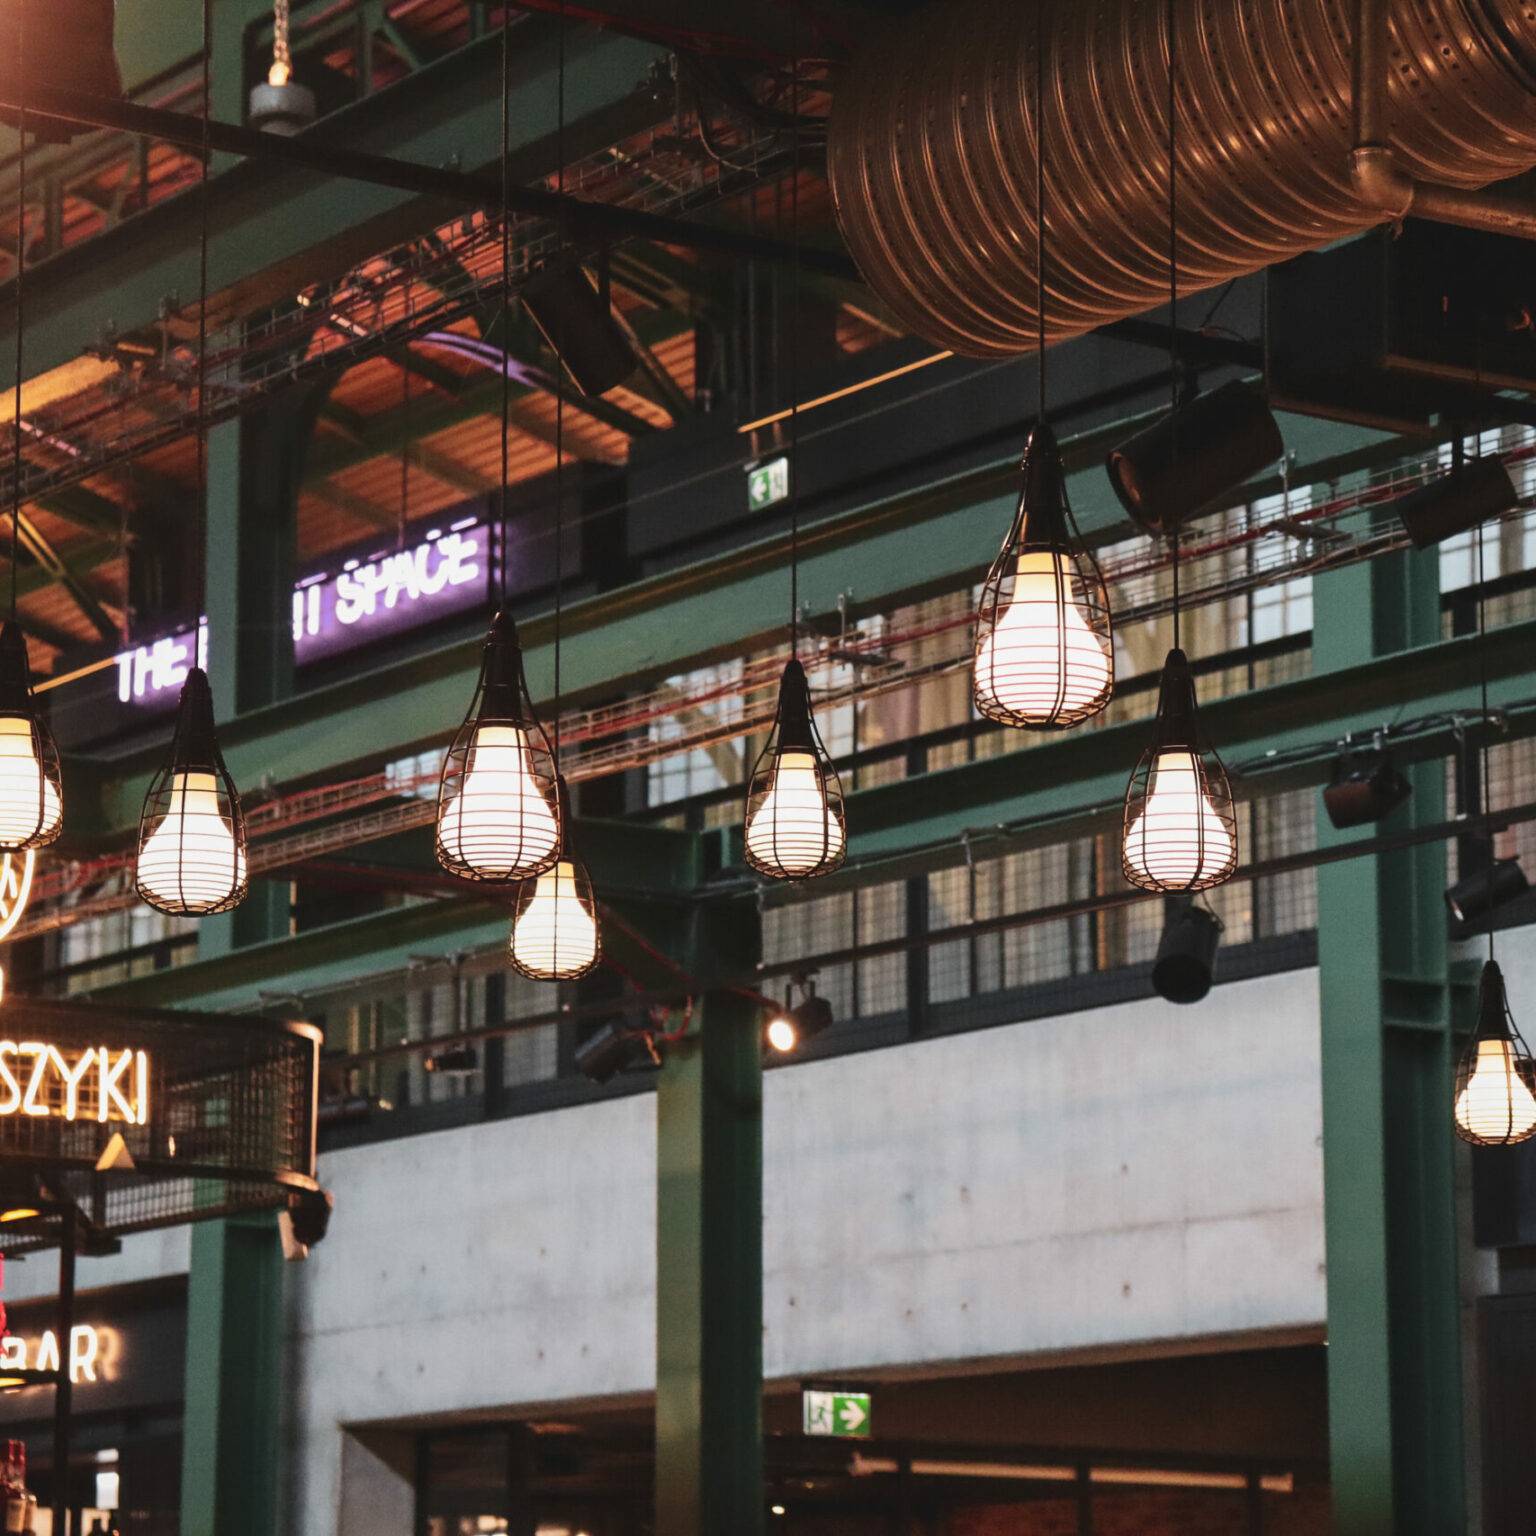 Lampen im Industrial style hängen in der Bar Koszyki von der Decke.